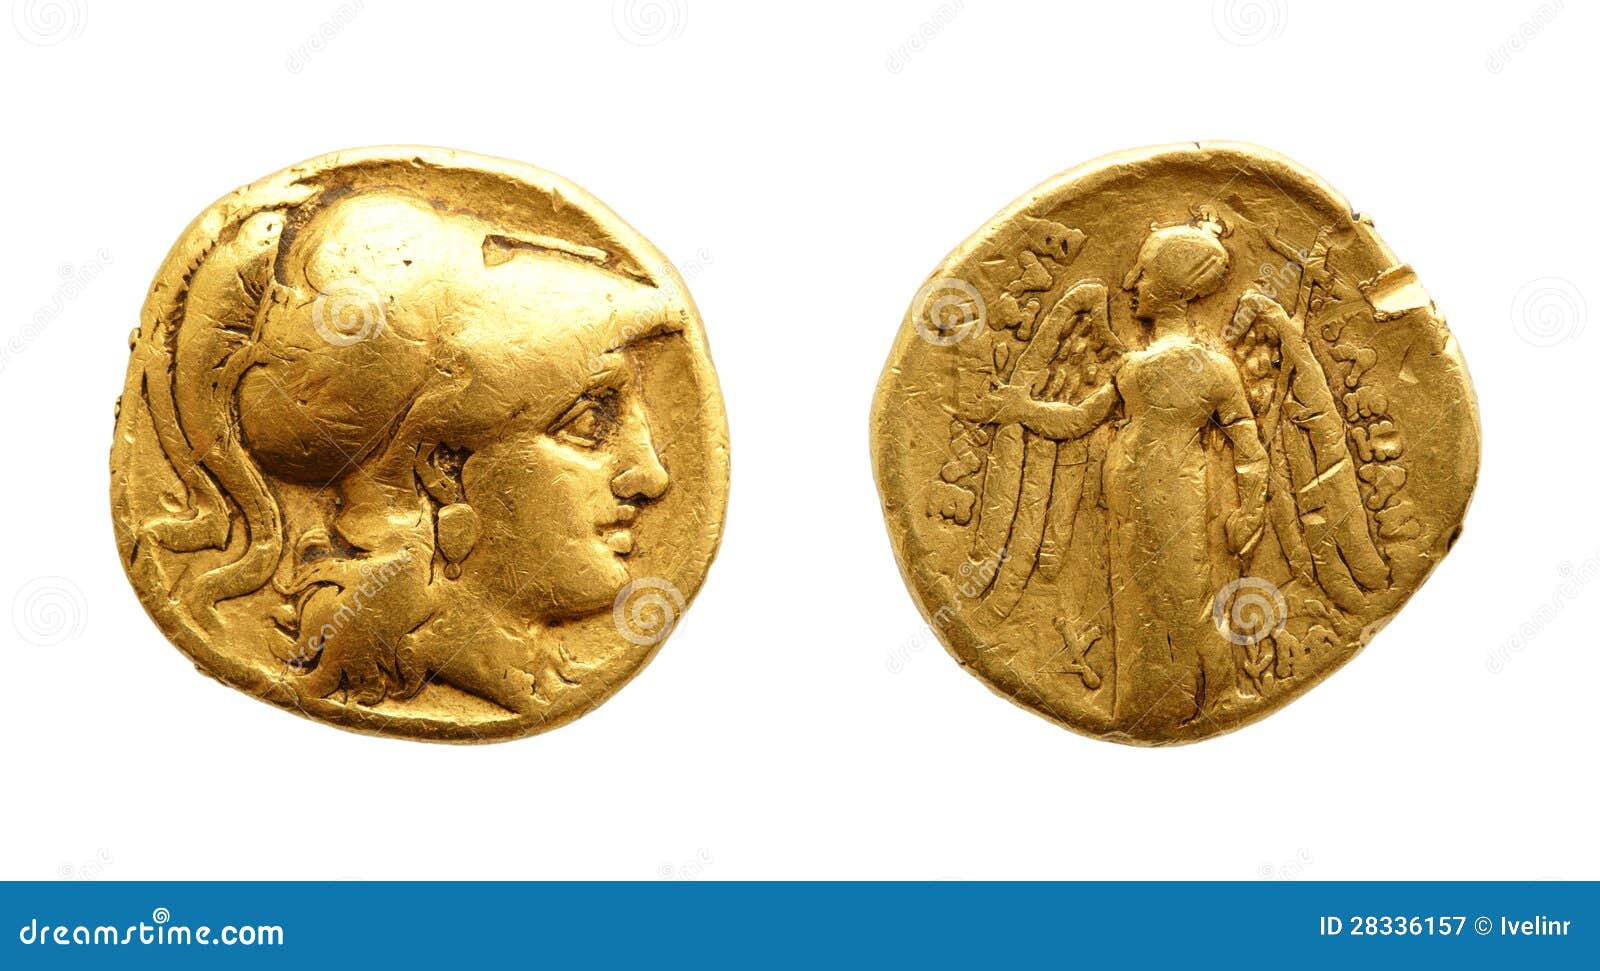 De två sidorna av ett forntida guld- myntar isolerat på vit.